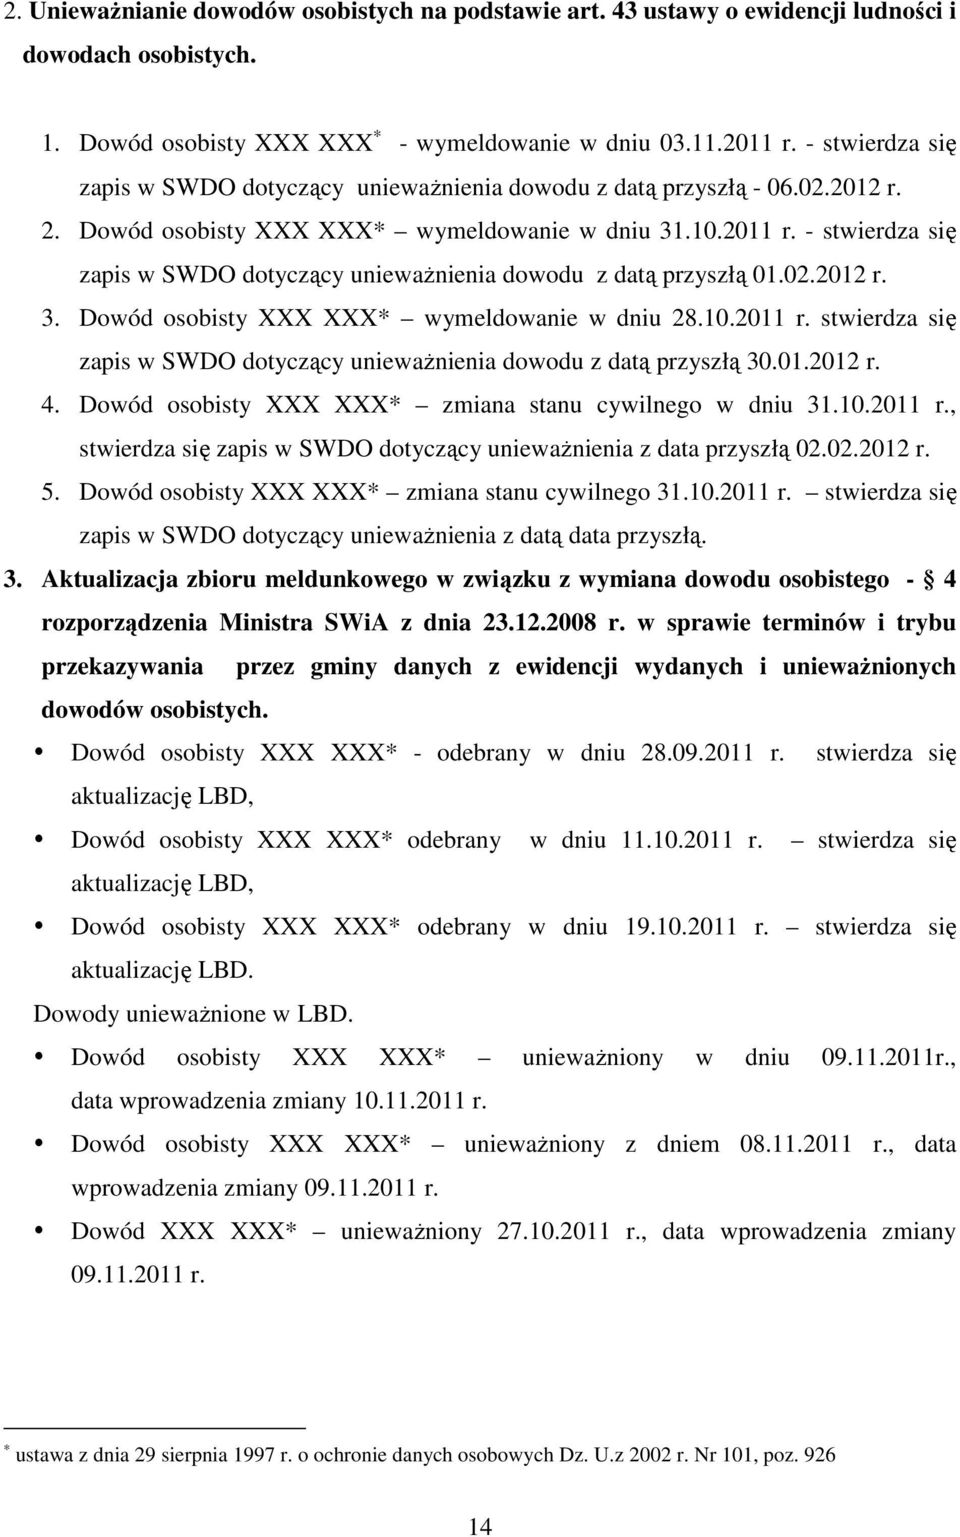 - stwierdza się zapis w SWDO dotyczący unieważnienia dowodu z datą przyszłą 01.02.2012 r. 3. Dowód osobisty XXX XXX* wymeldowanie w dniu 28.10.2011 r.